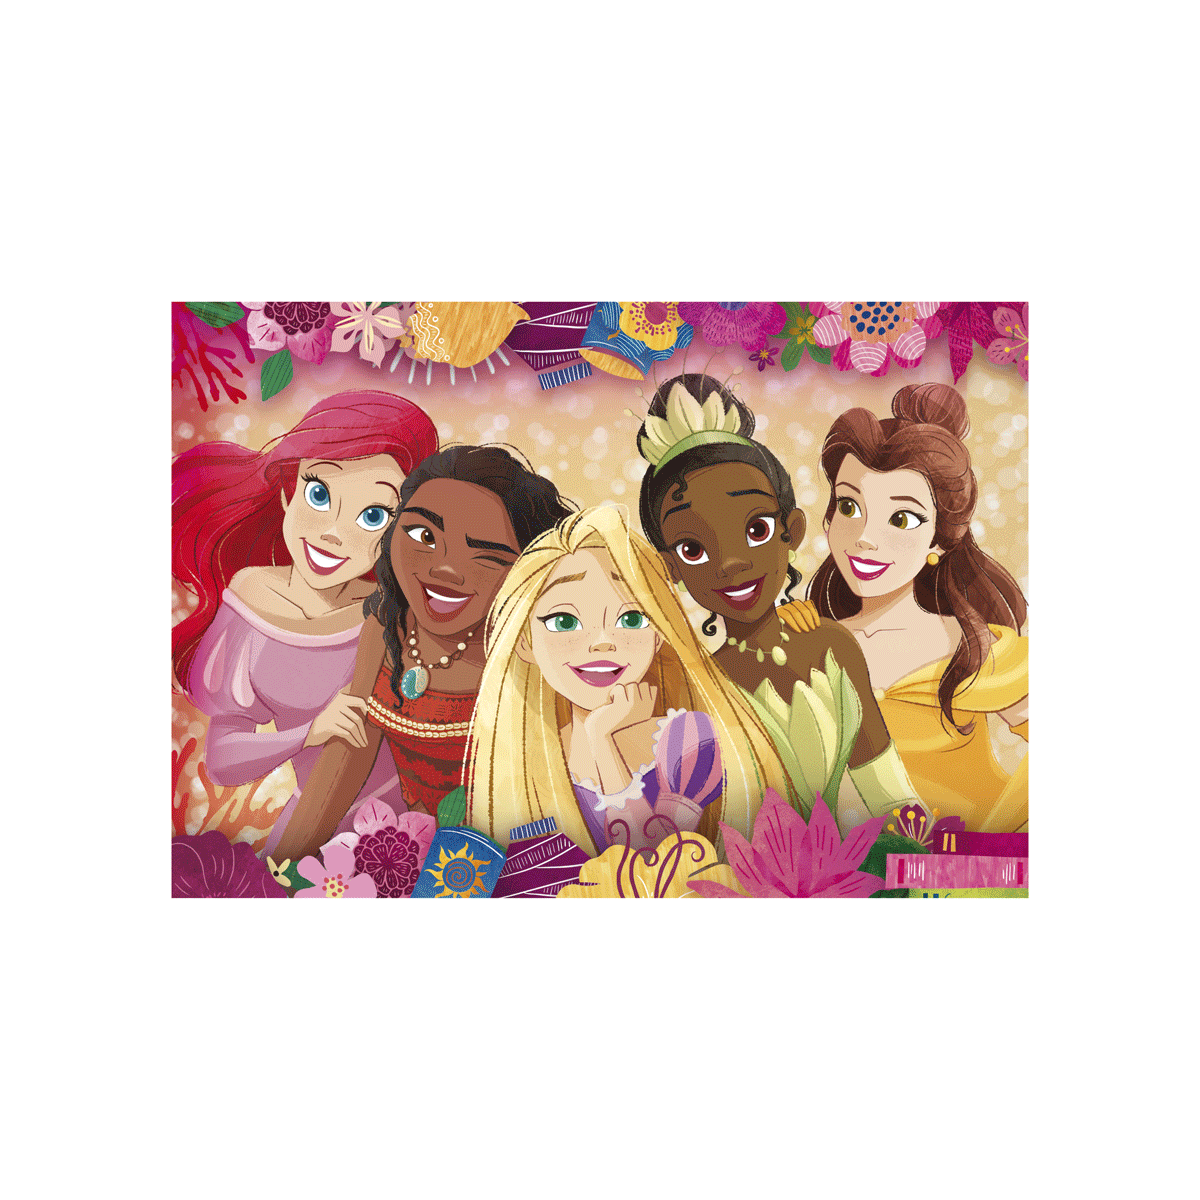 Clementoni supercolor puzzle disney princess - 24 maxi pezzi, puzzle bambini 3 anni - CLEMENTONI, DISNEY PRINCESS